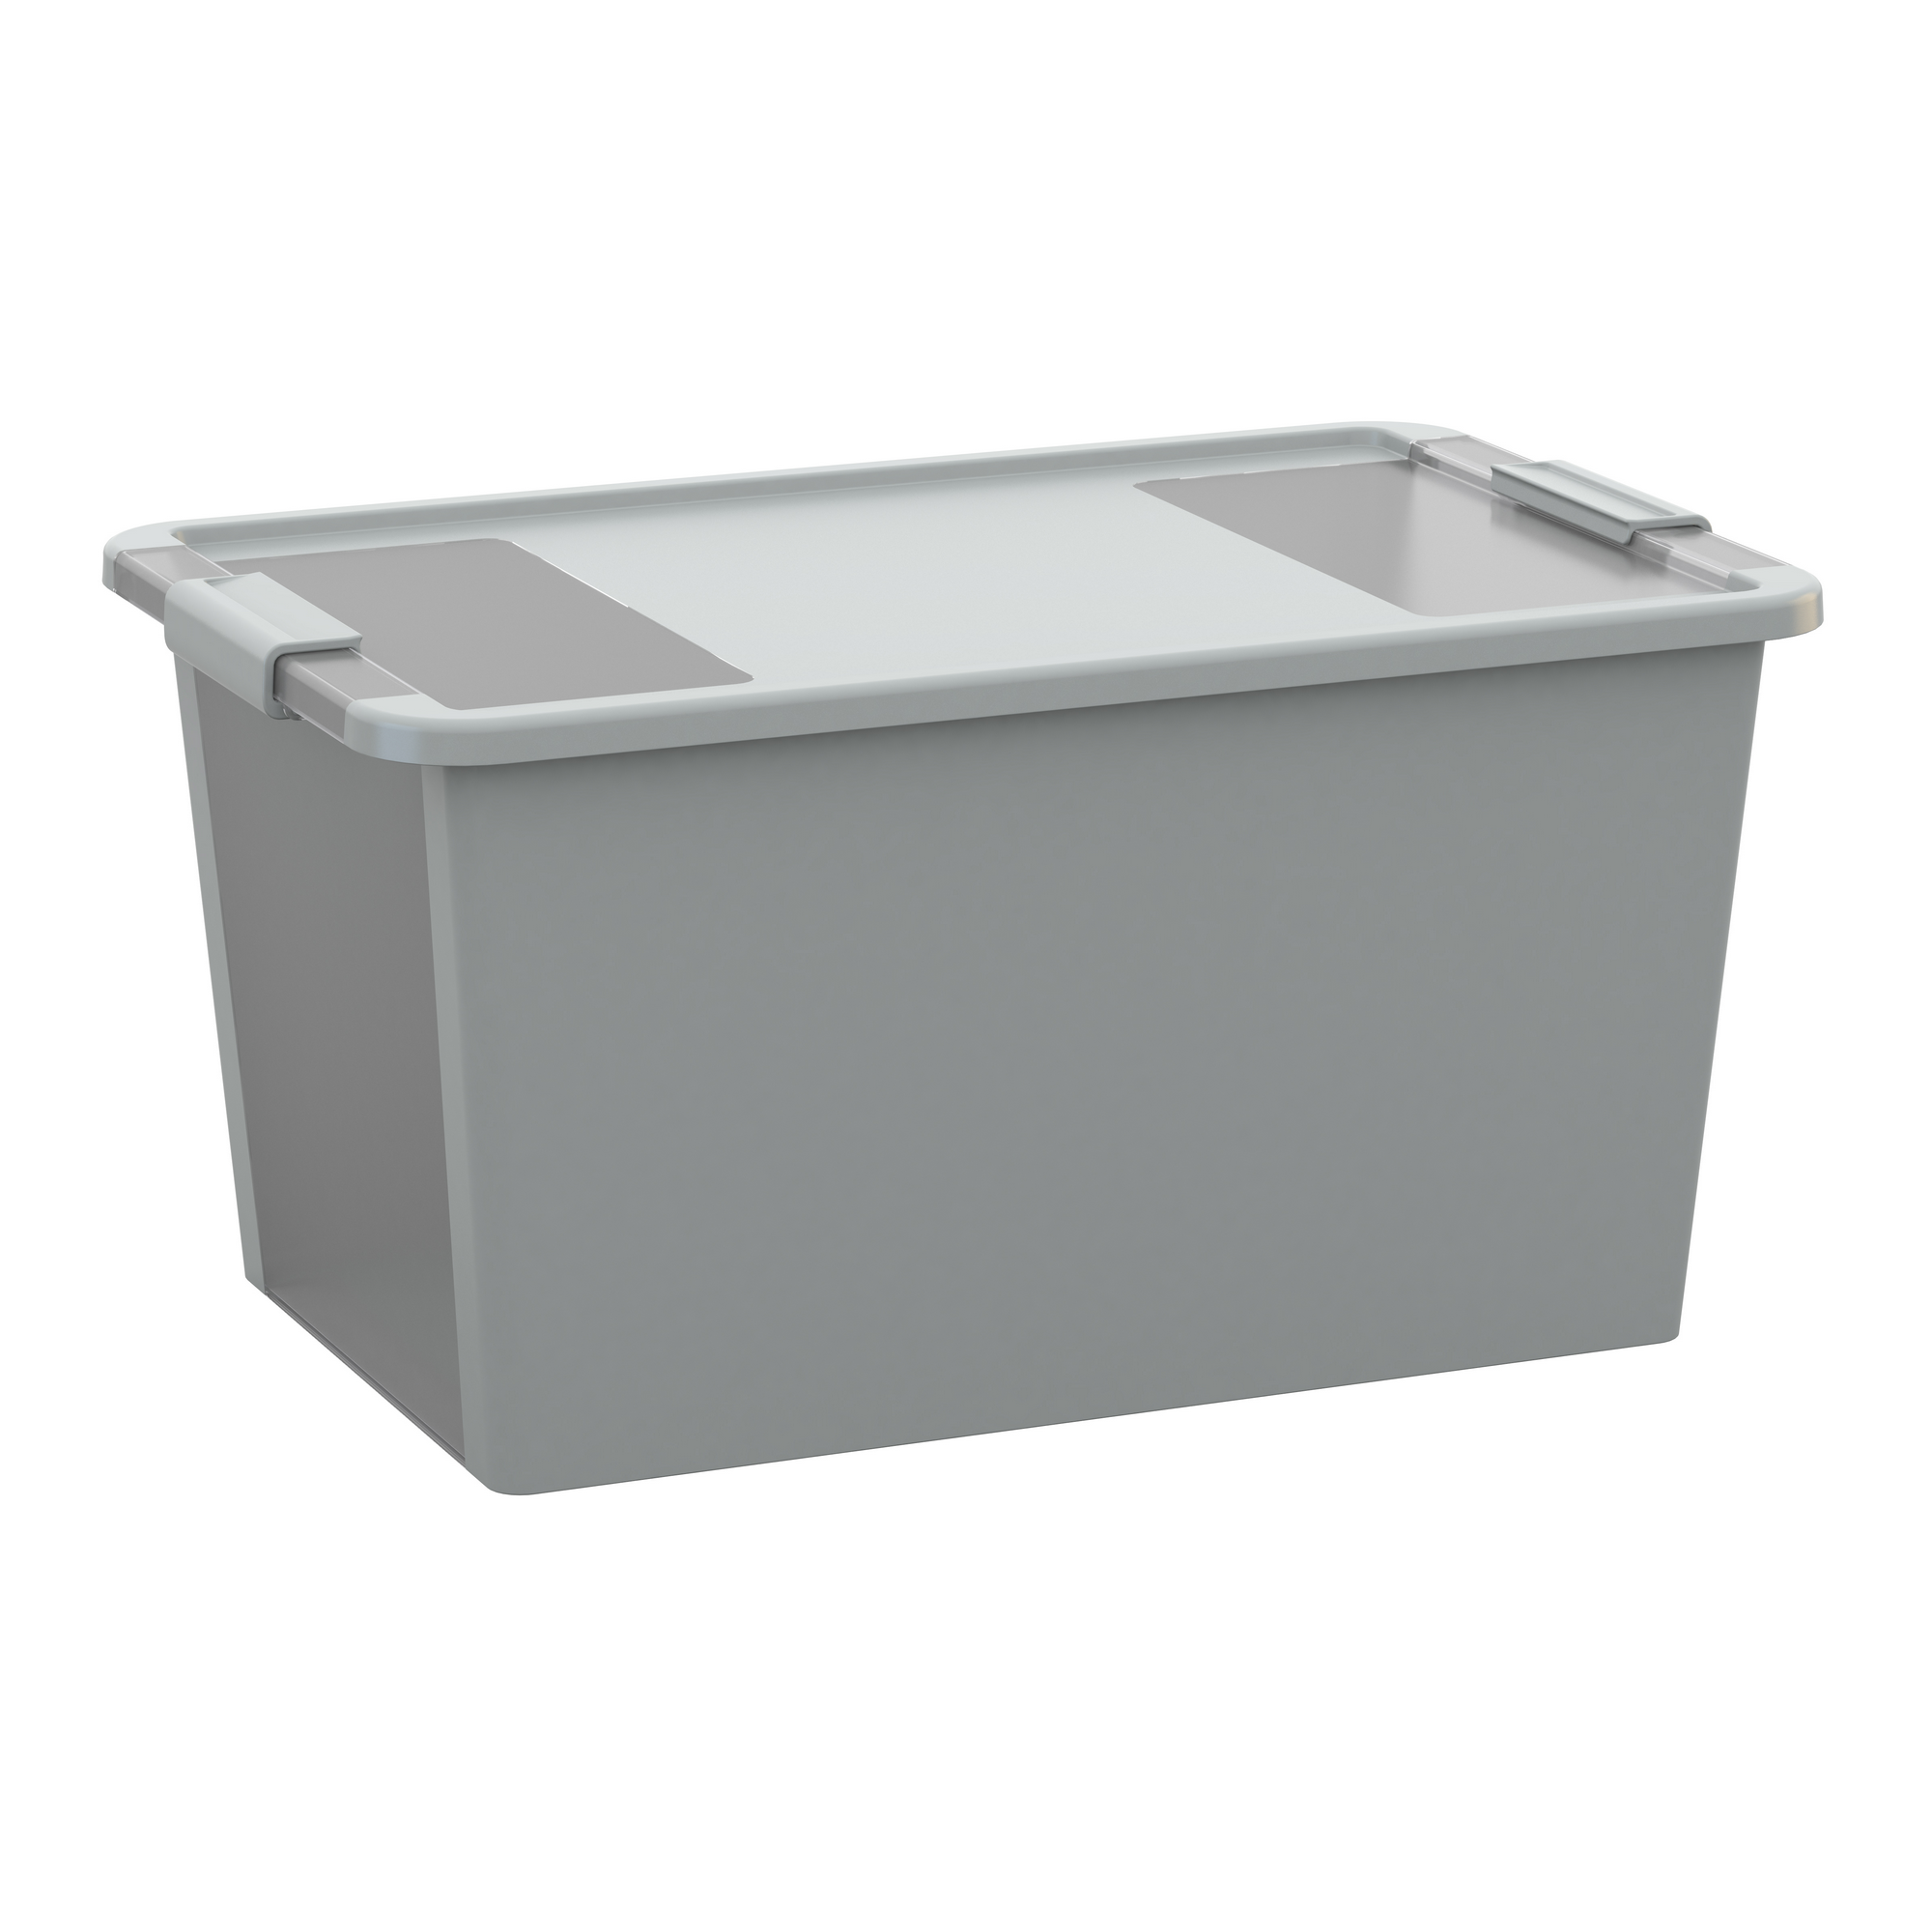 Aufbewahrungsbox 'BI Box L' grau/transparent 40 l, 55 x 35 x 28 cm + product picture